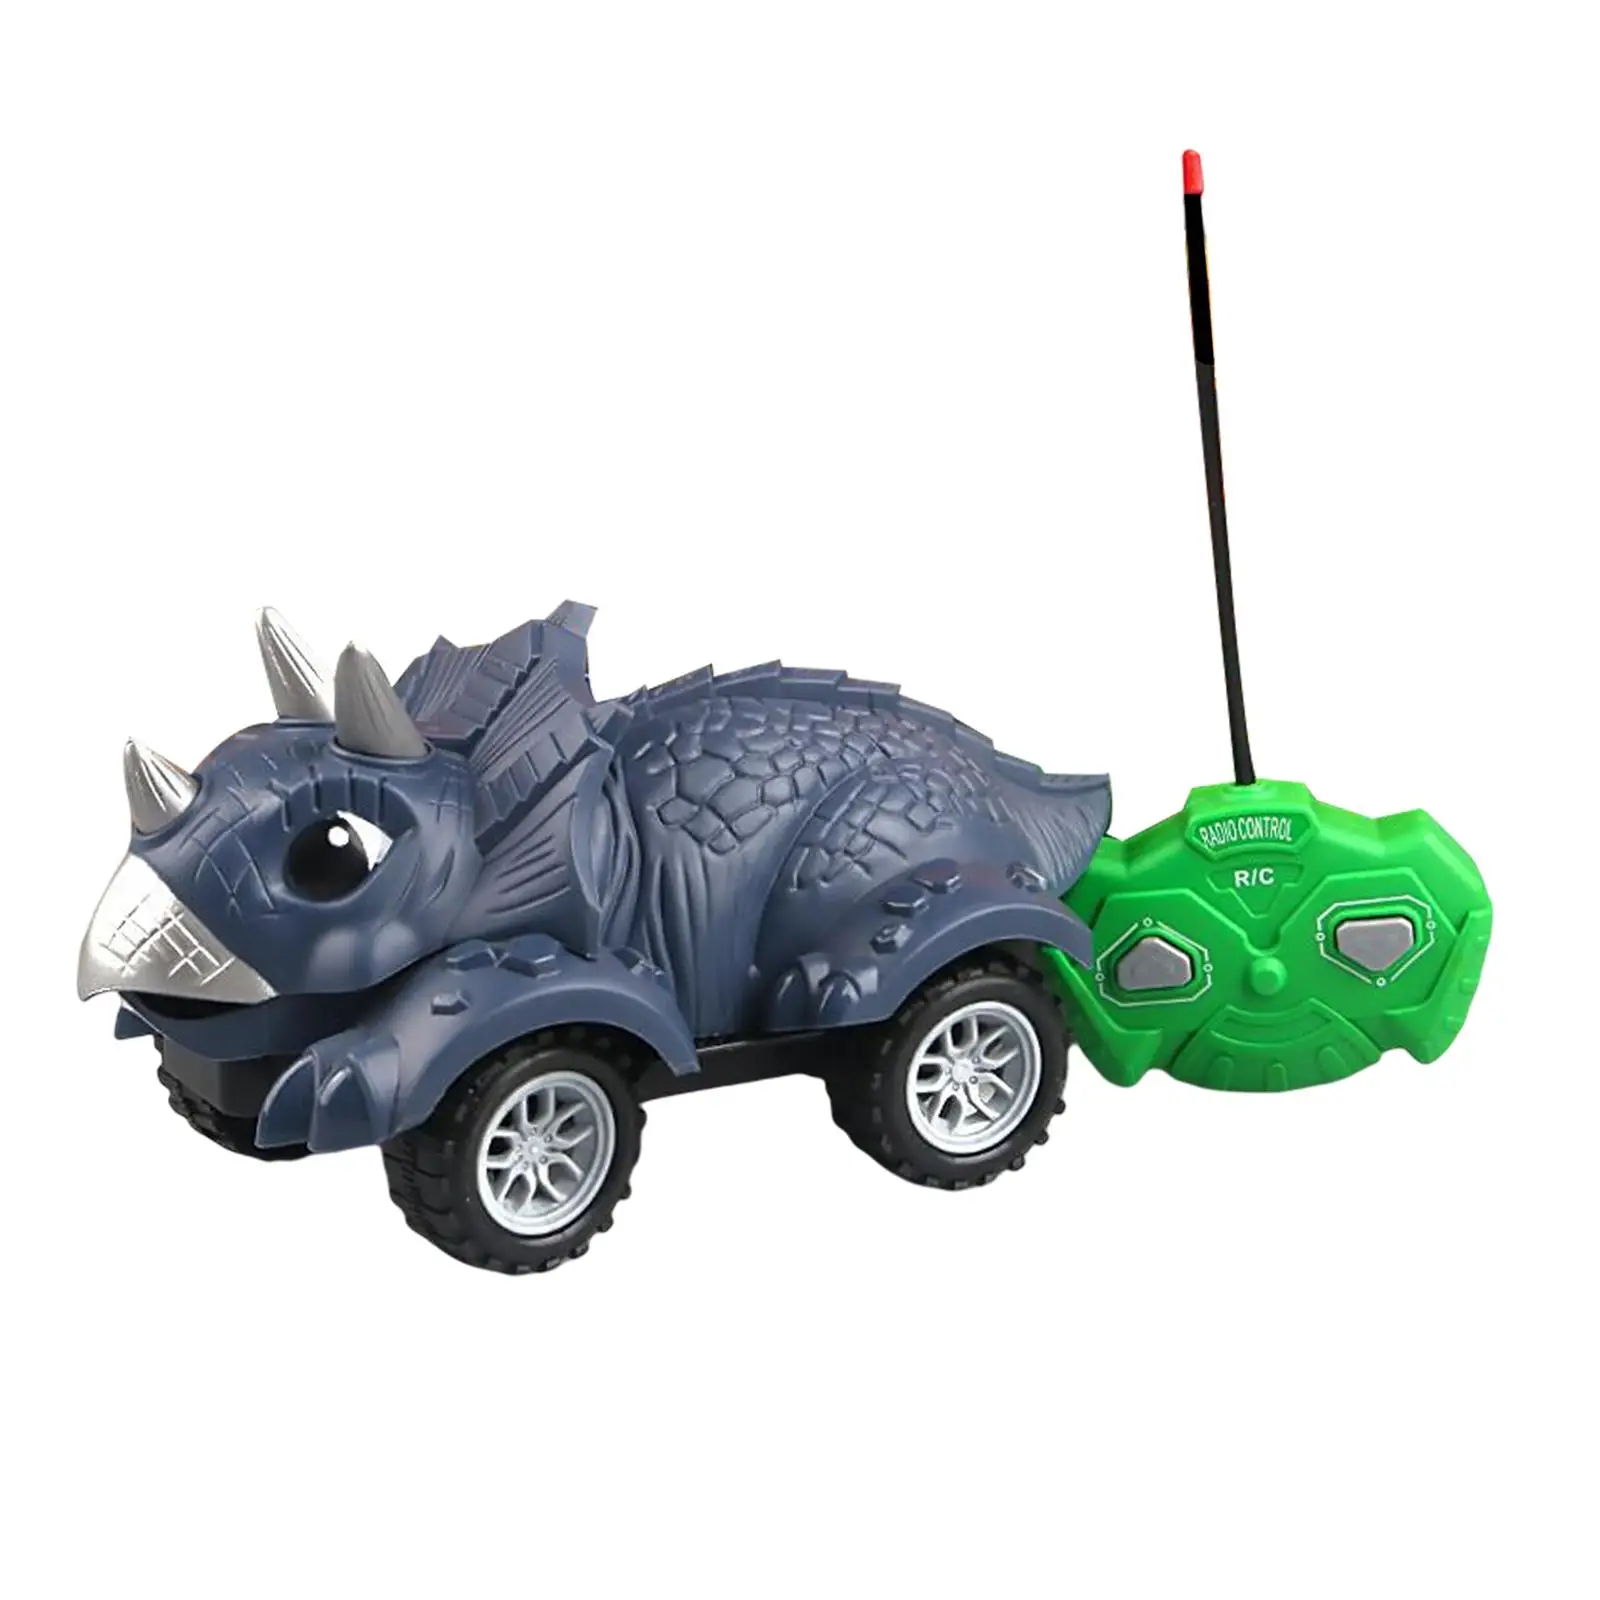 Creative Dinosaur Monster Trucks RC Race for Children Boys 3-5